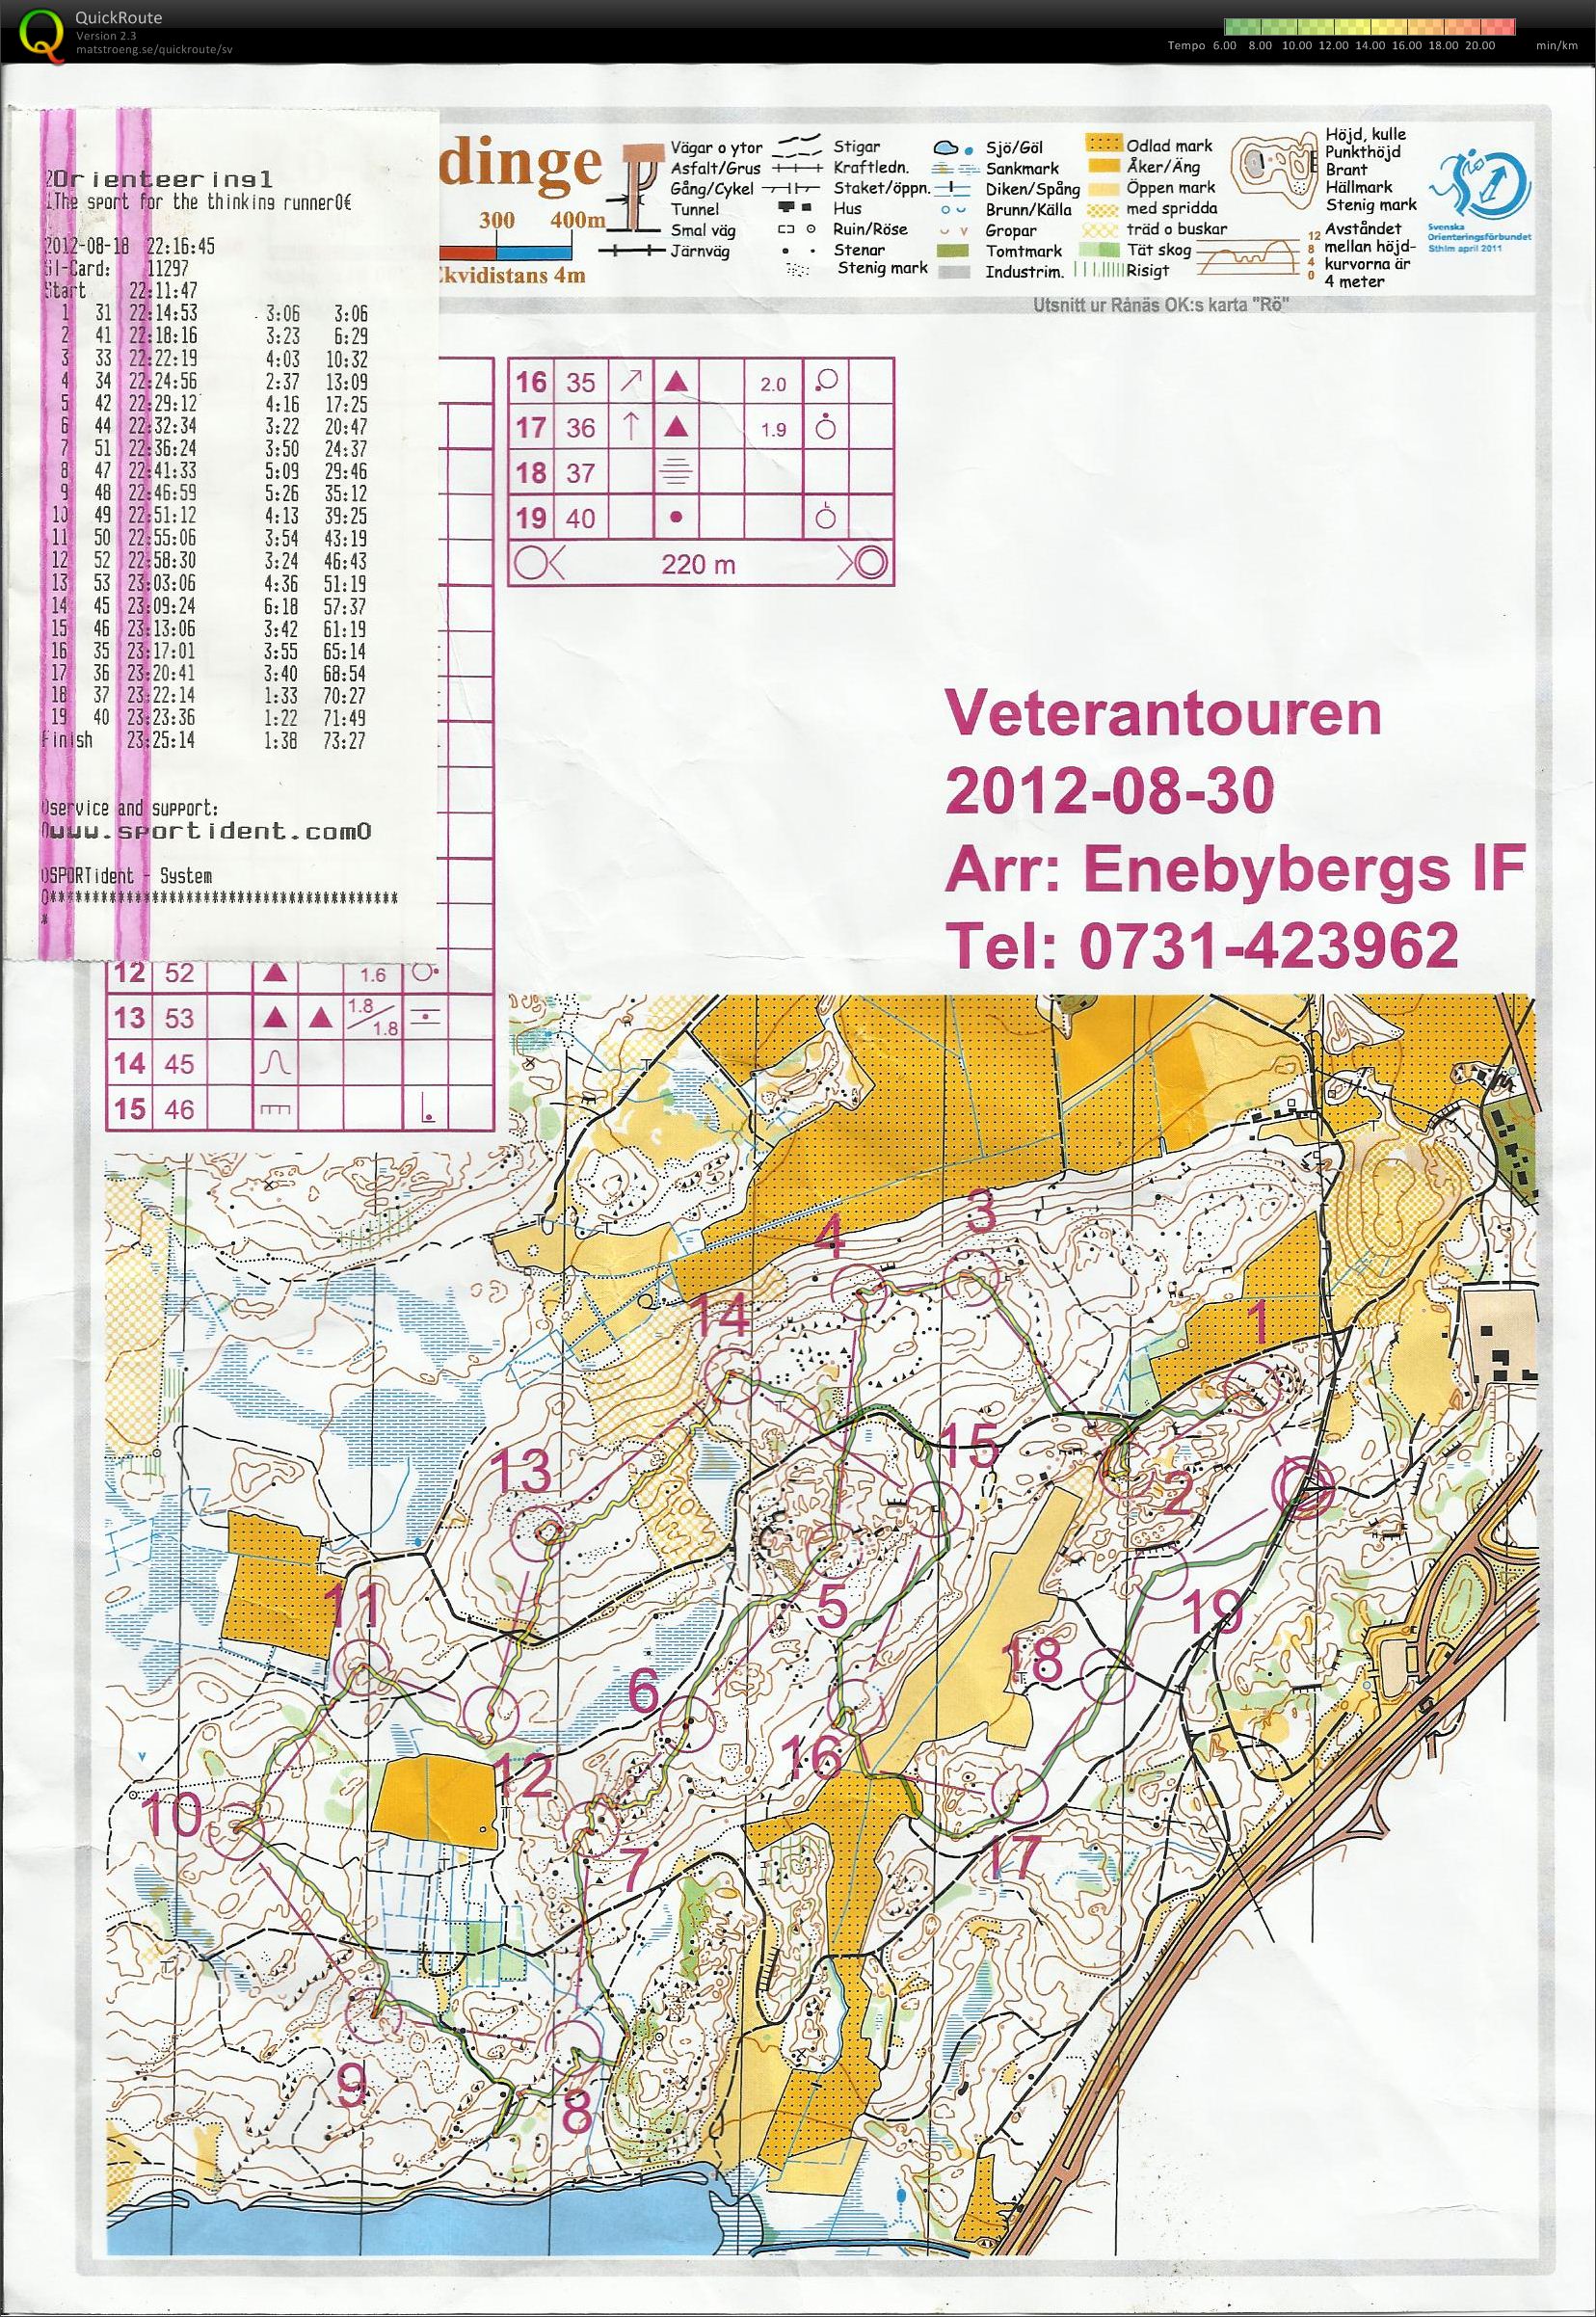 Veterantouren Enebyberg (30.08.2012)